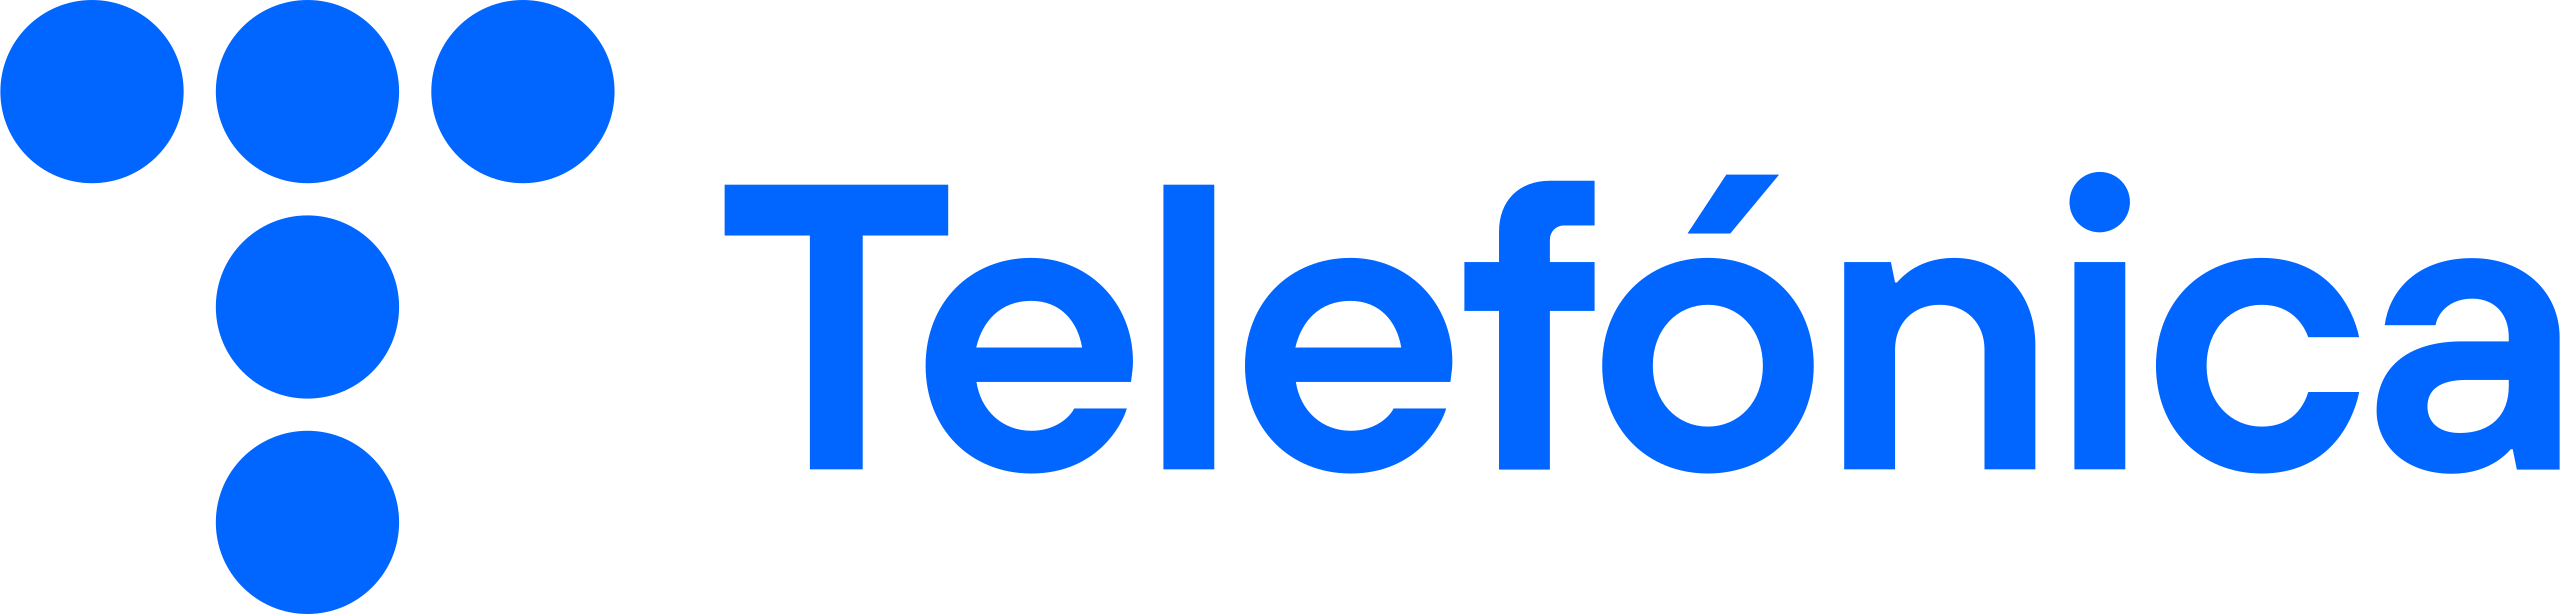 Telefónica_2021_logo.svg